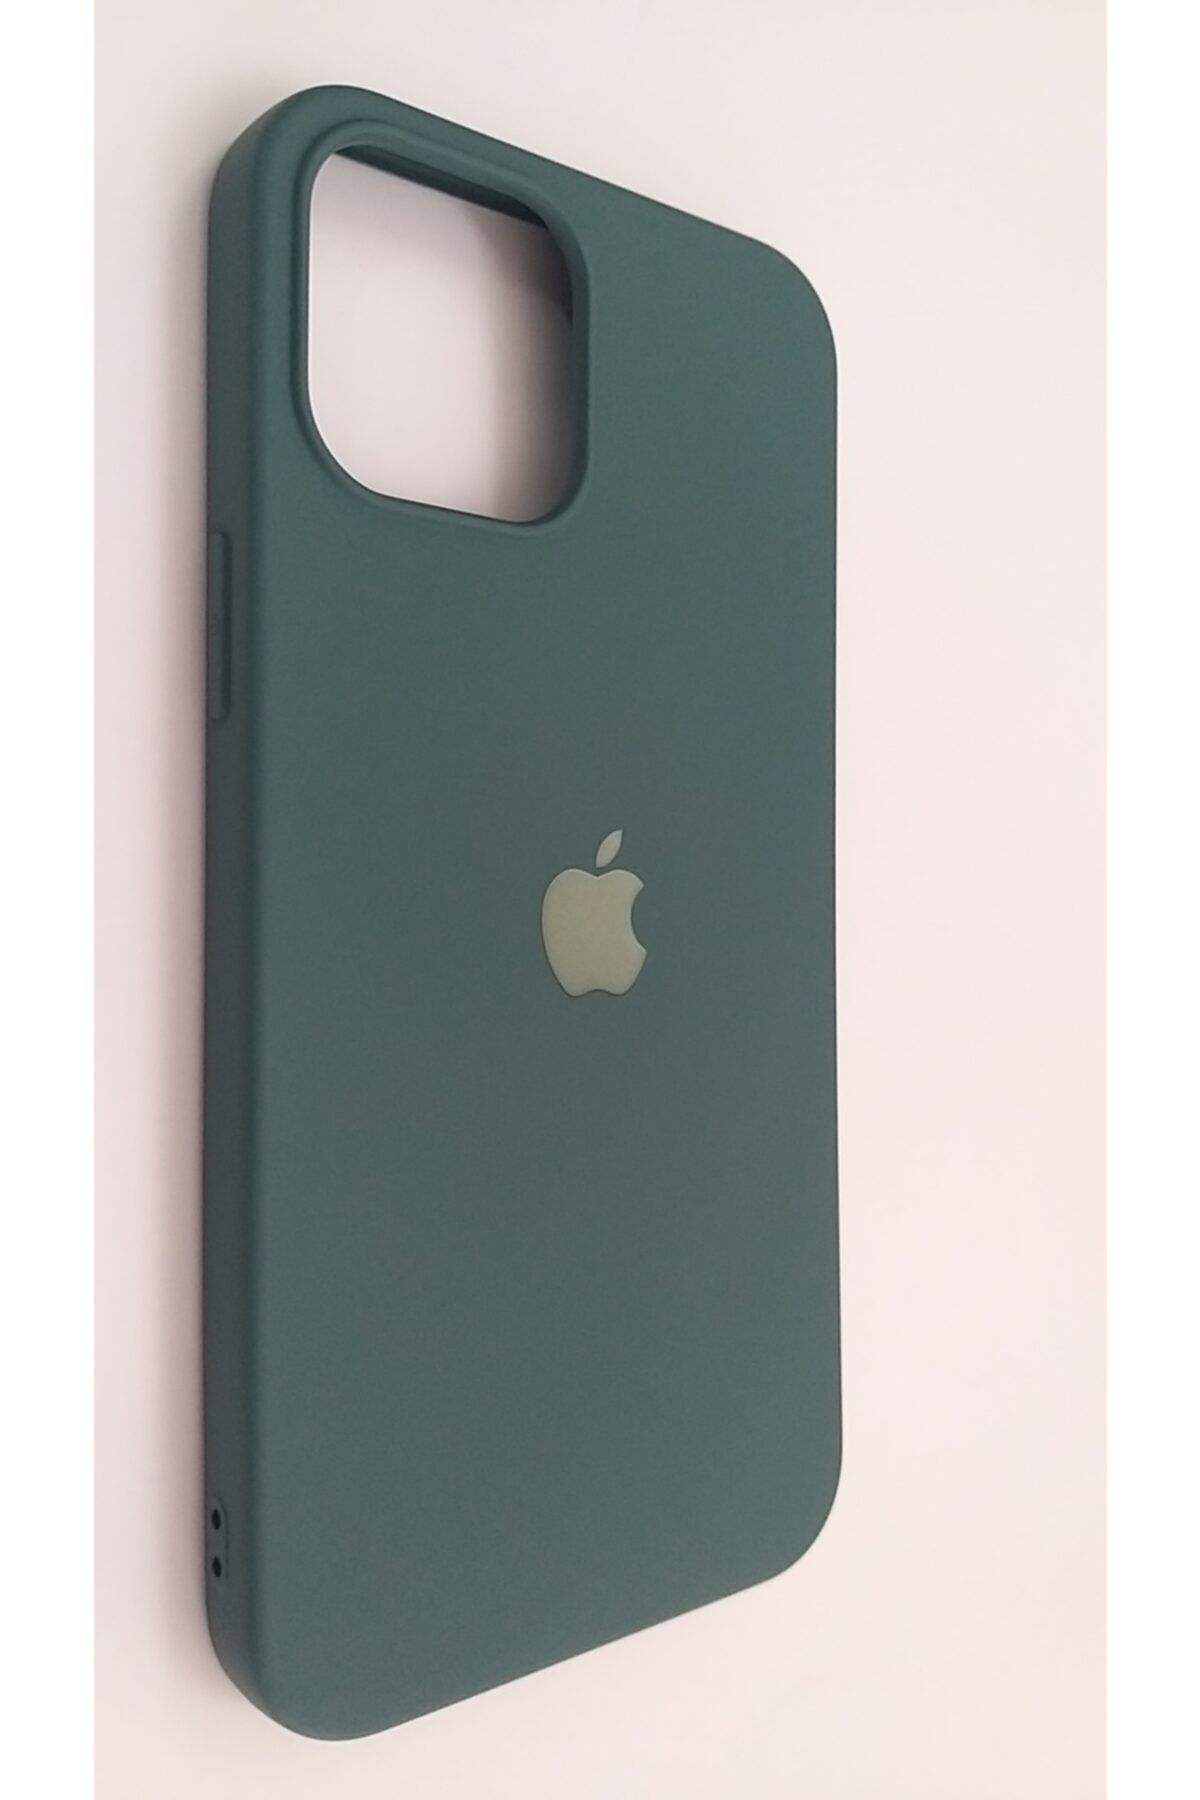 Pirok Store Iphone 12 Promax 6.7 Haki Yeşil Lansman Içi Kadife Logolu Silikon Kılıf